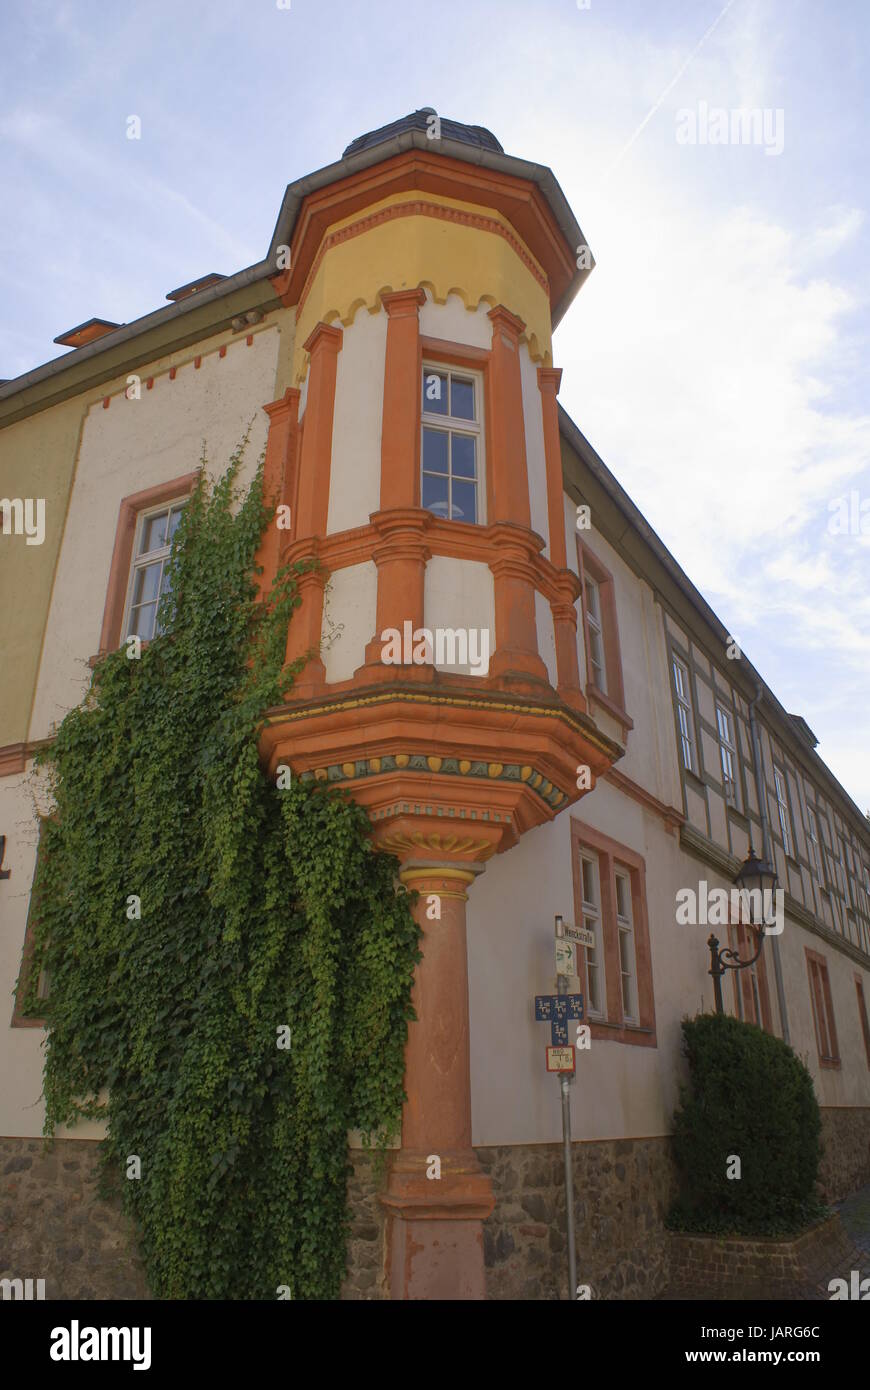 Fachwerkhaus mit einem orange gestrichenen Erker an der Ecke Stock Photo